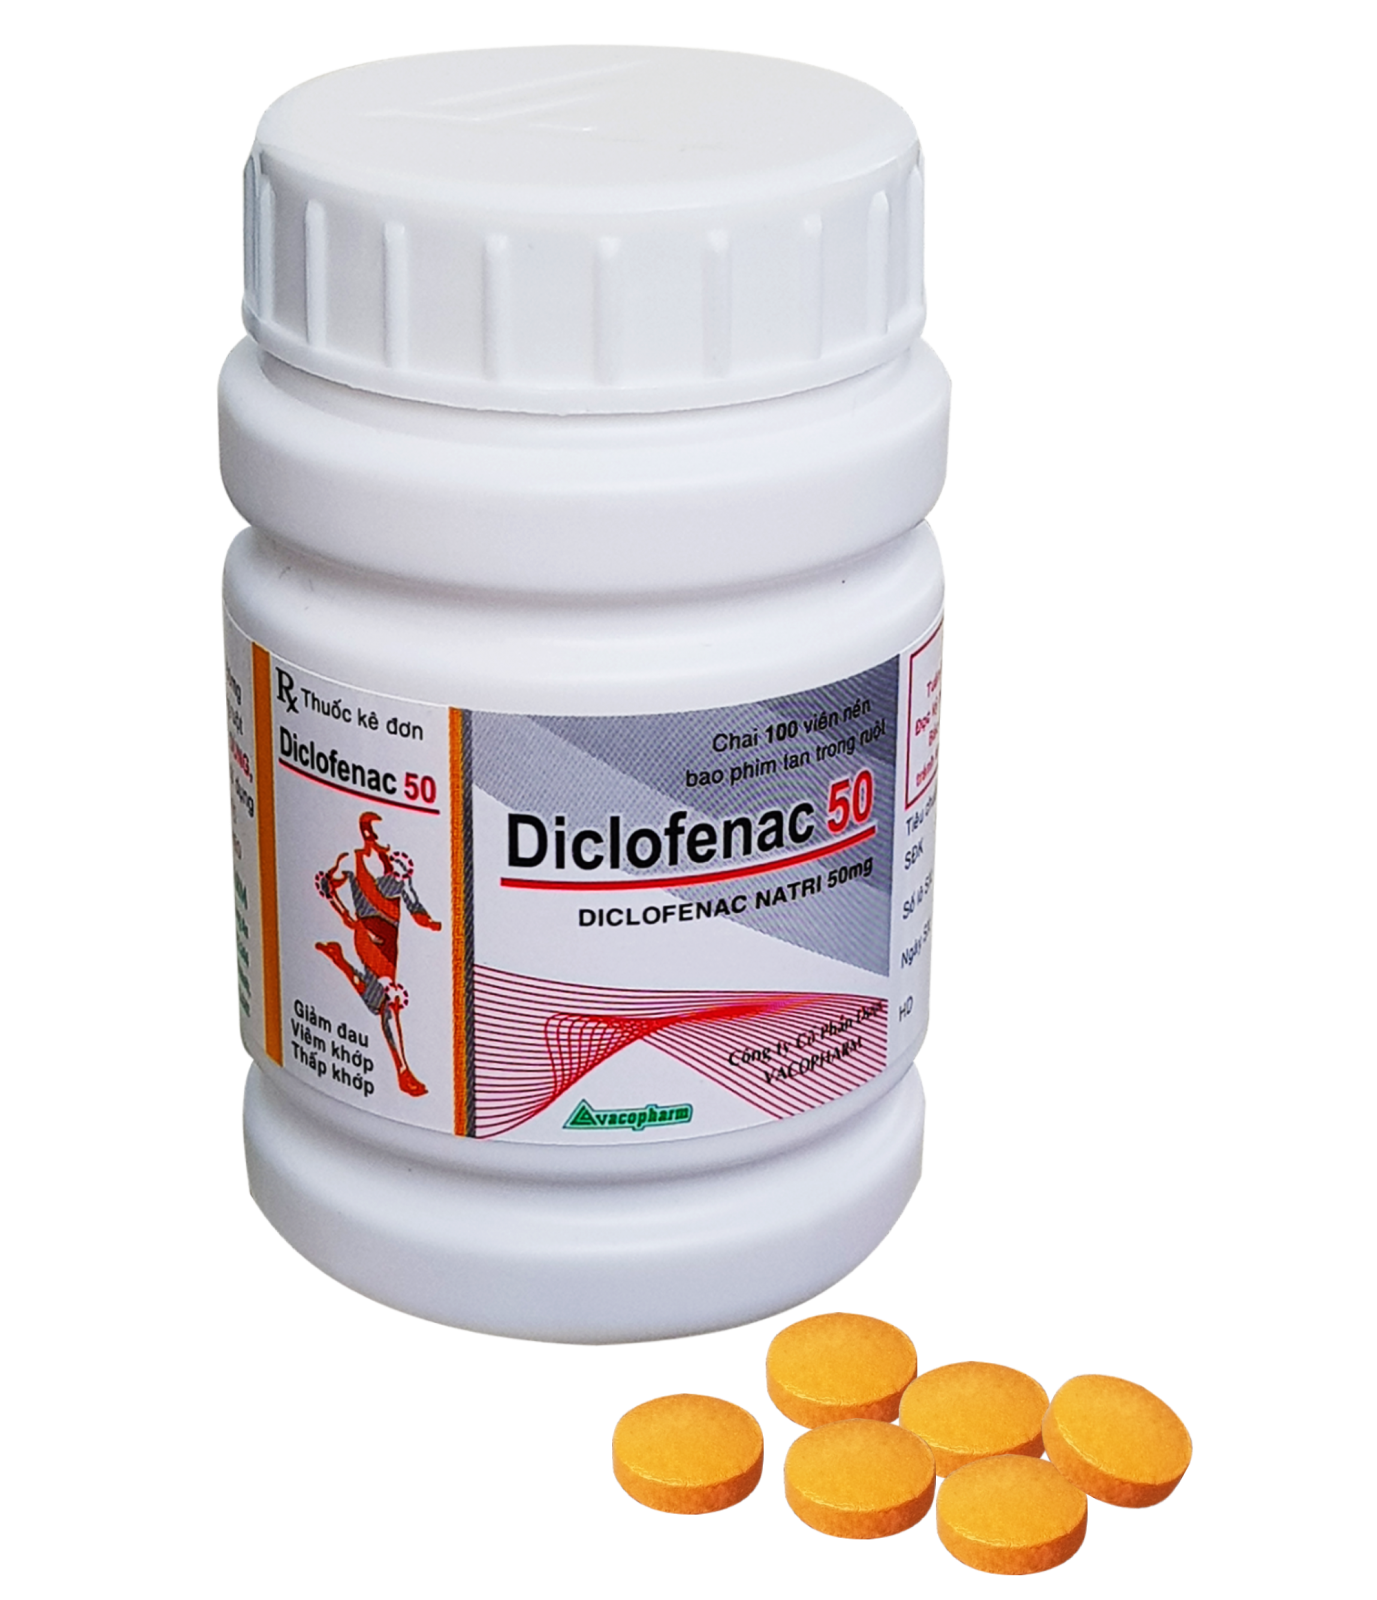 Tầm quan trọng của thành phần thuốc diclofenac và tác động đến sức khỏe